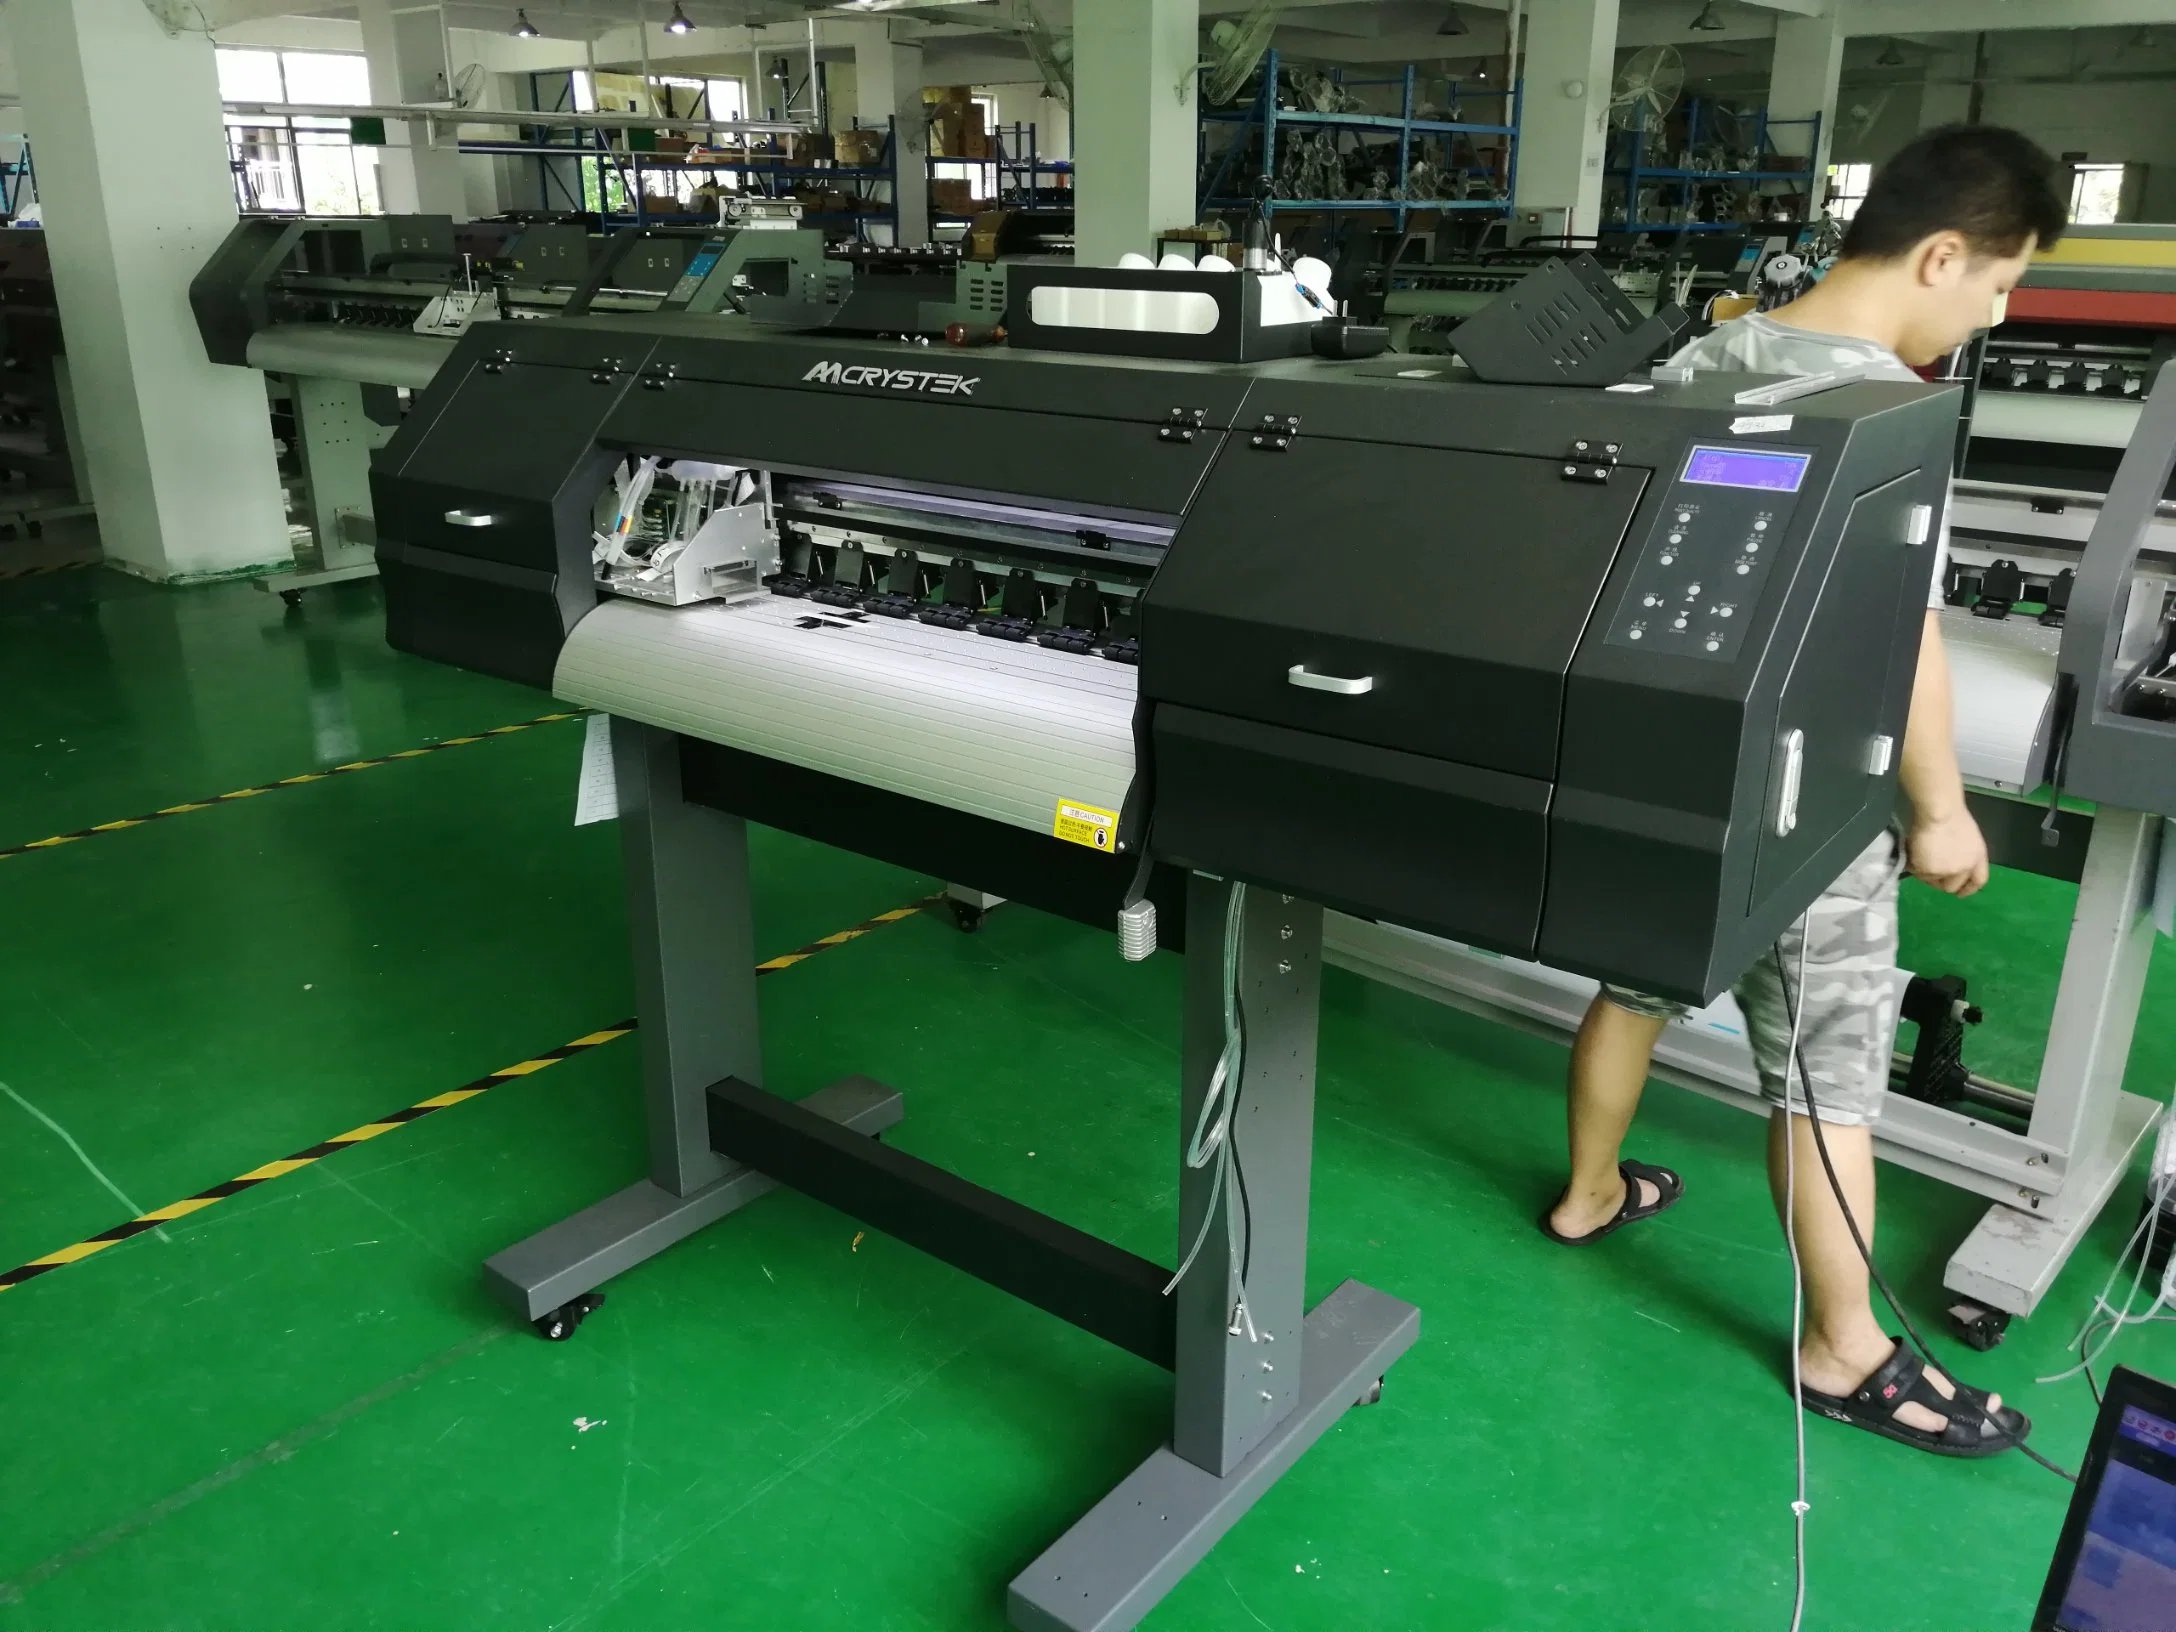 65см T футболка печать машины Byhx программы I3200 Dtf печатающей головки ПЭТ-пленку цифровой принтер, нажмите кнопку нагрева машины